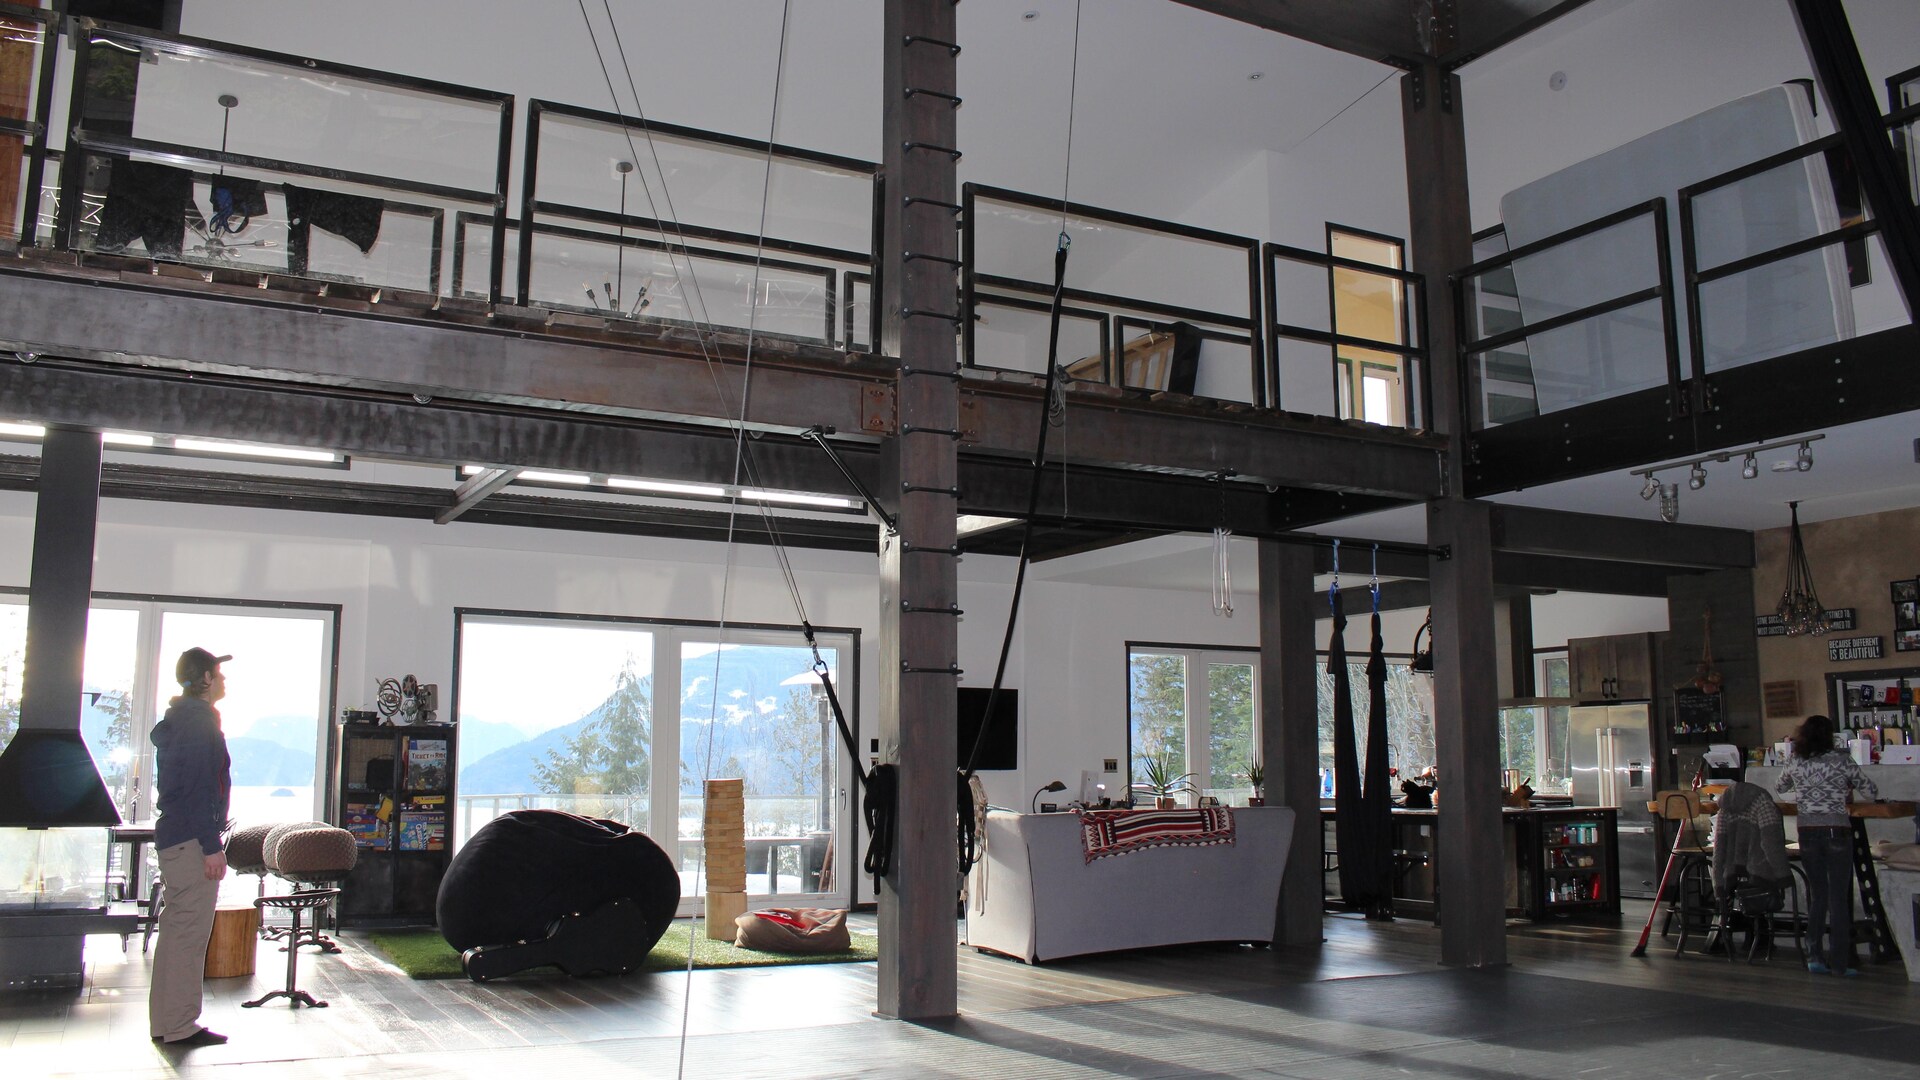 Intérieur d'une maison à espace ouvert avec plafond haut, d'allure industrielle.